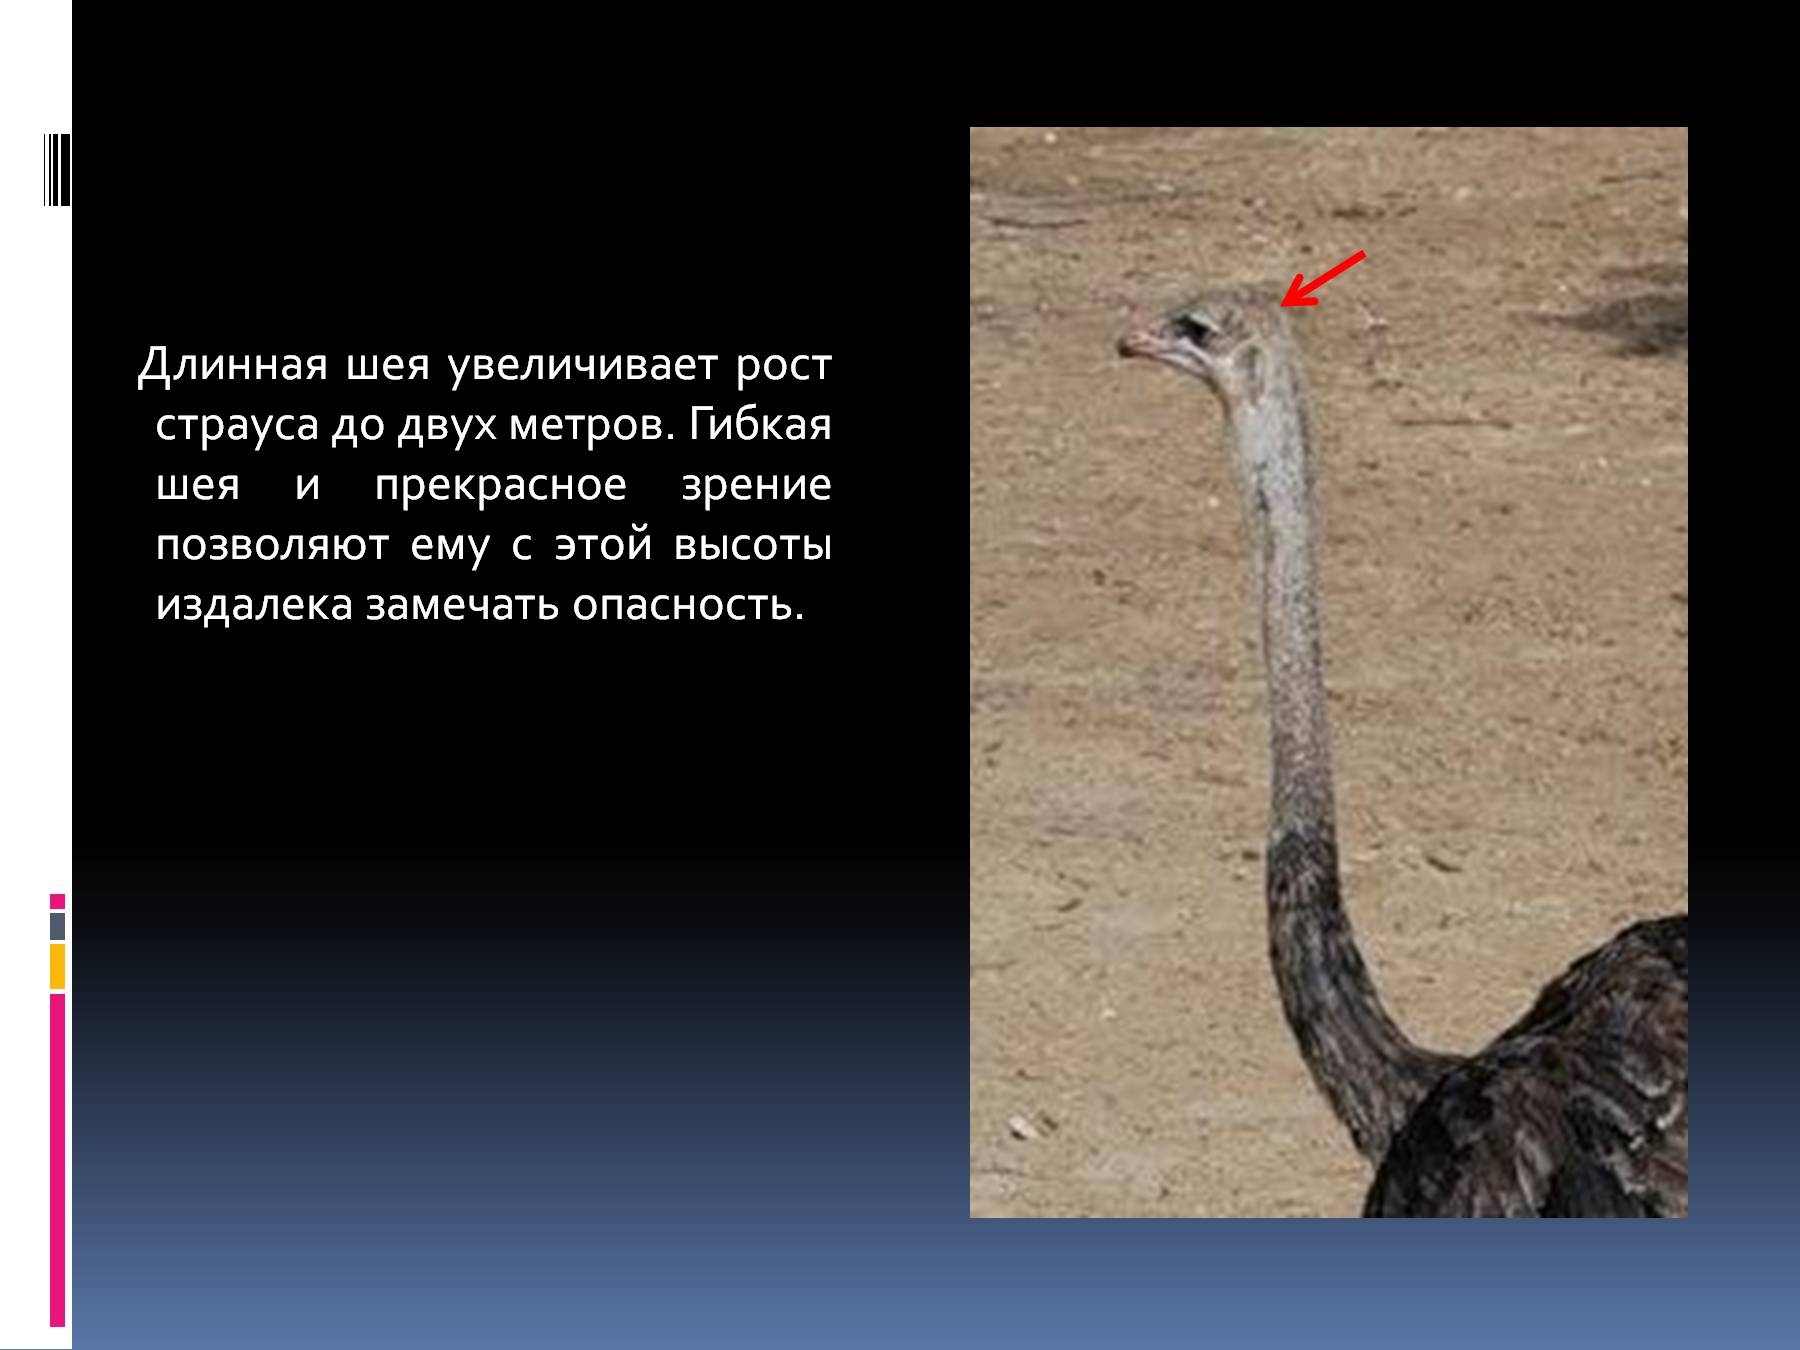 Длинную гибкую шею. Птица с длинной шеей. Птица с самой длинной шеей. Длина шеи страуса. У какой птицы длинная шея.